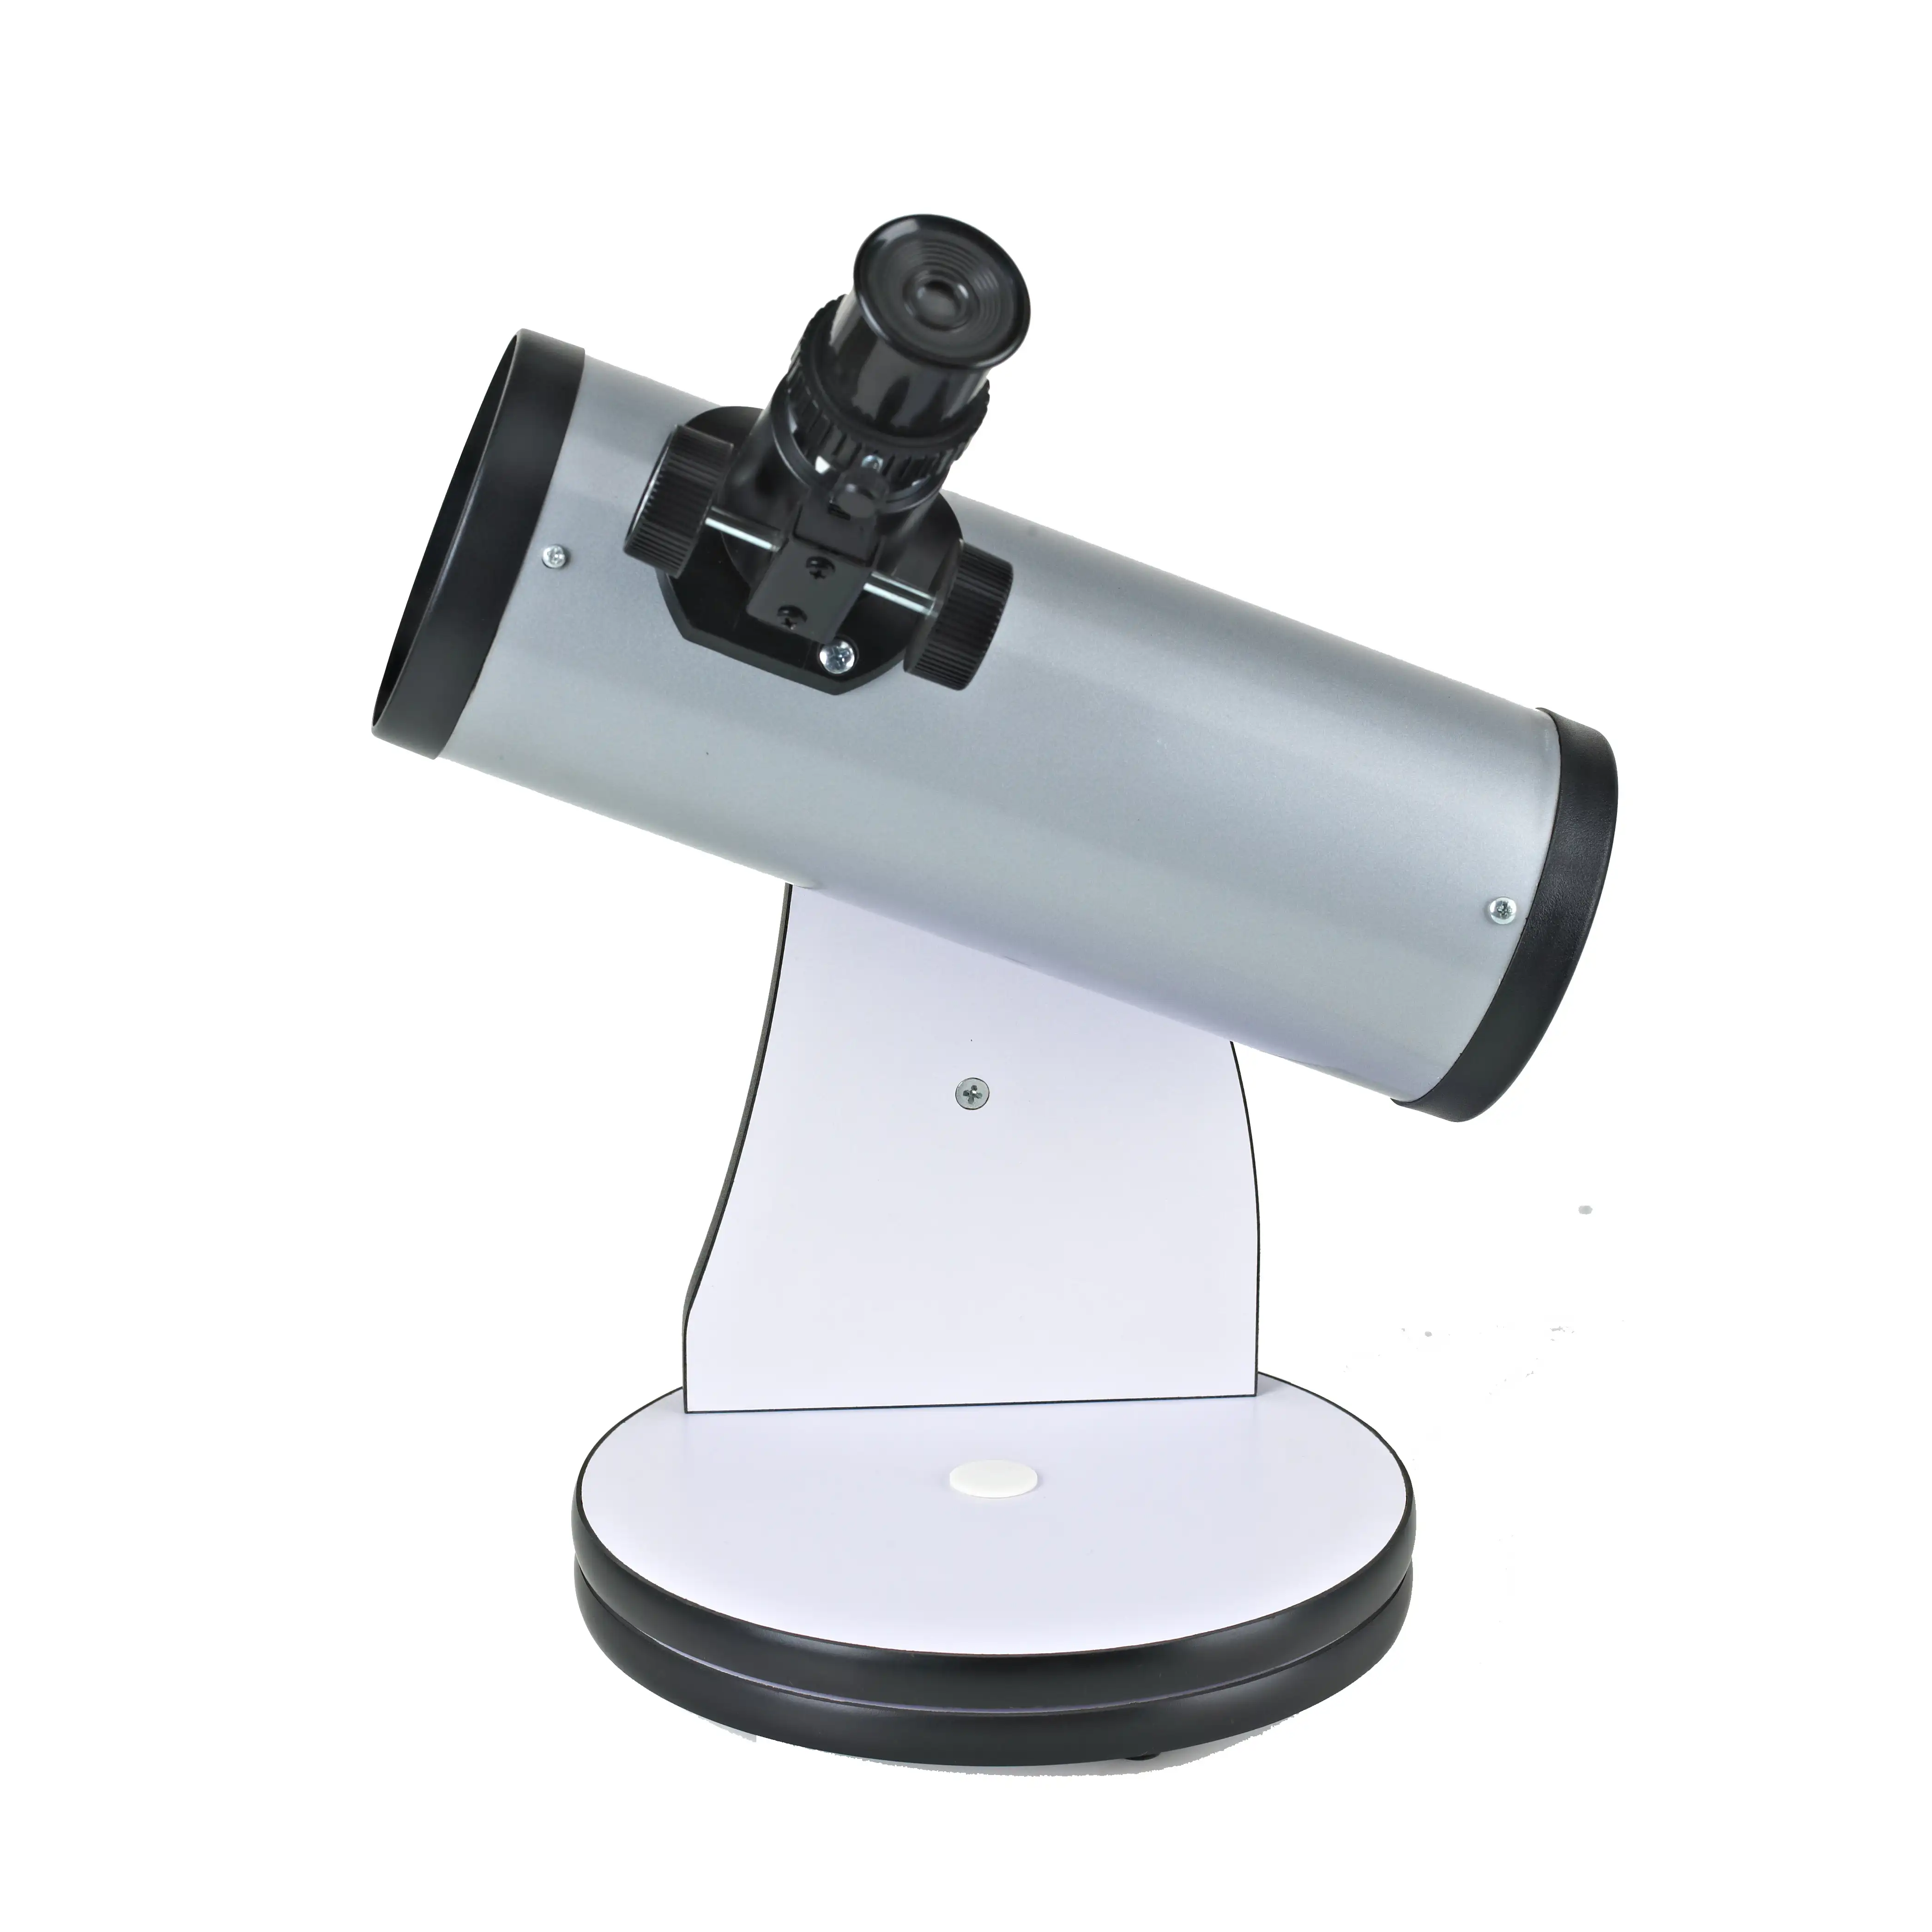 Piccolo dobson 76/300 astronomico telescopio riflettore